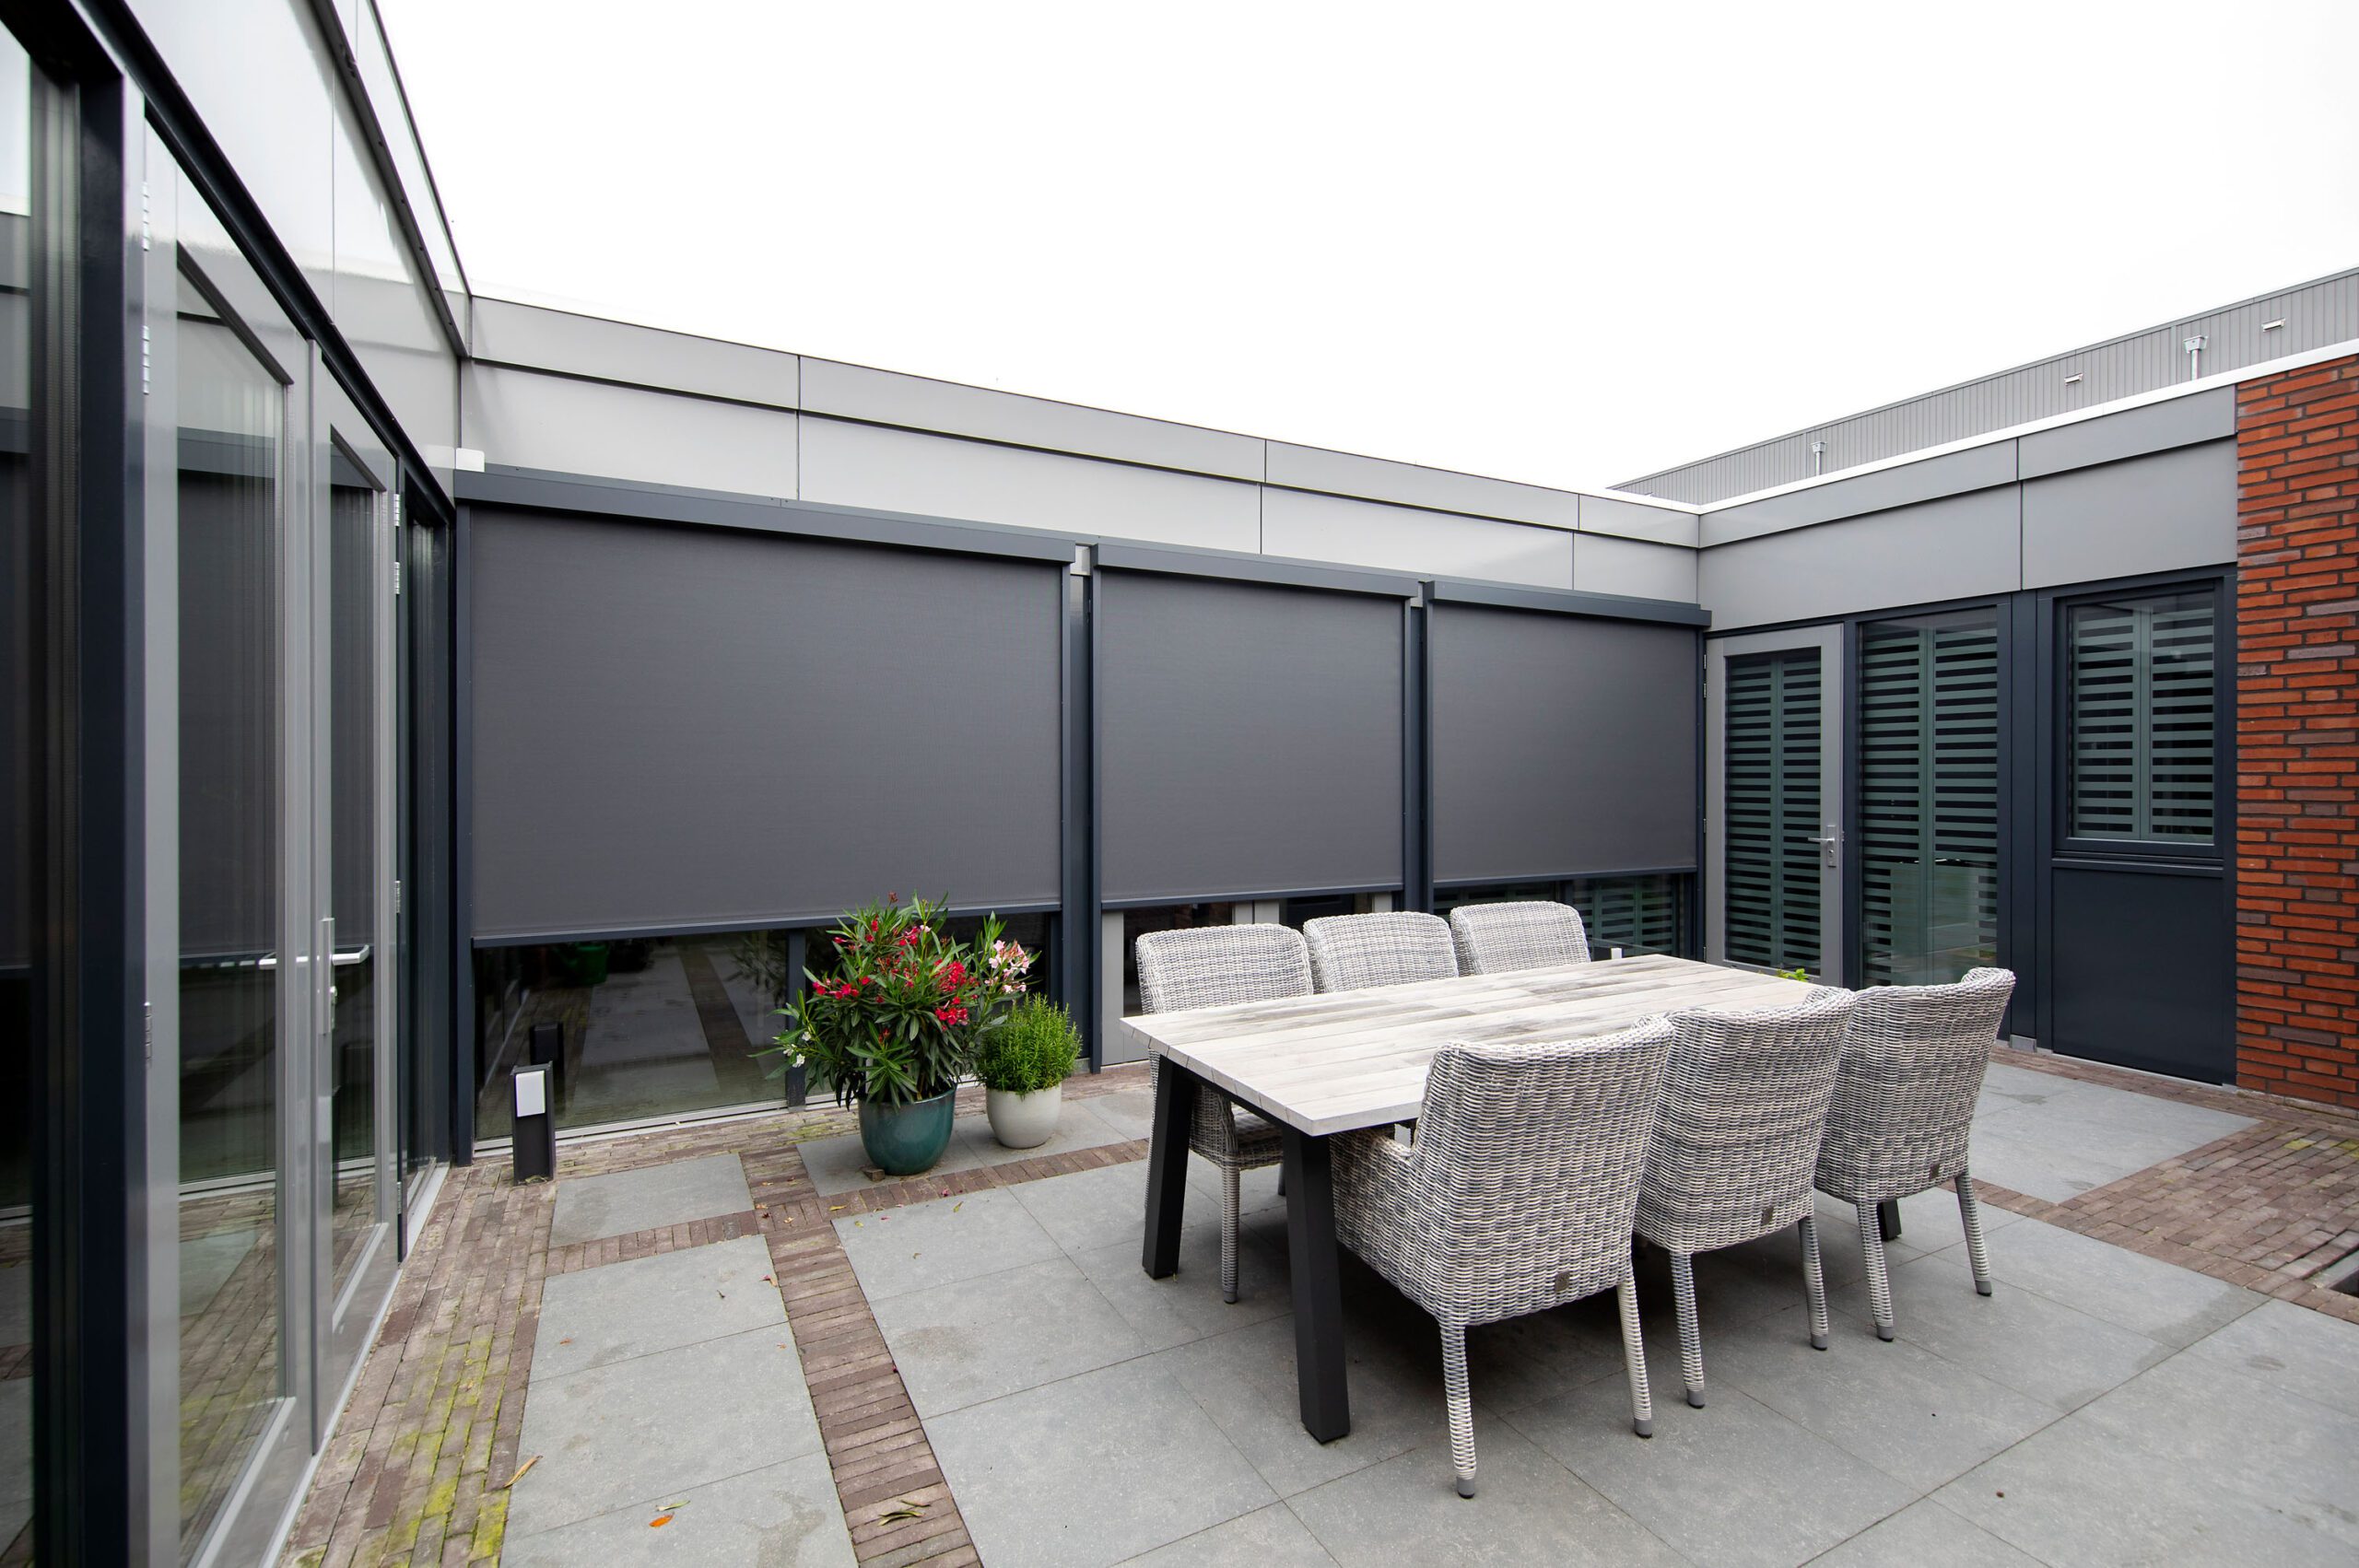 Buitenaanzicht zonnescreens en Fractions aluminium shutters aan moderne nieuwbouw bungalow in diverse gebruiksposities